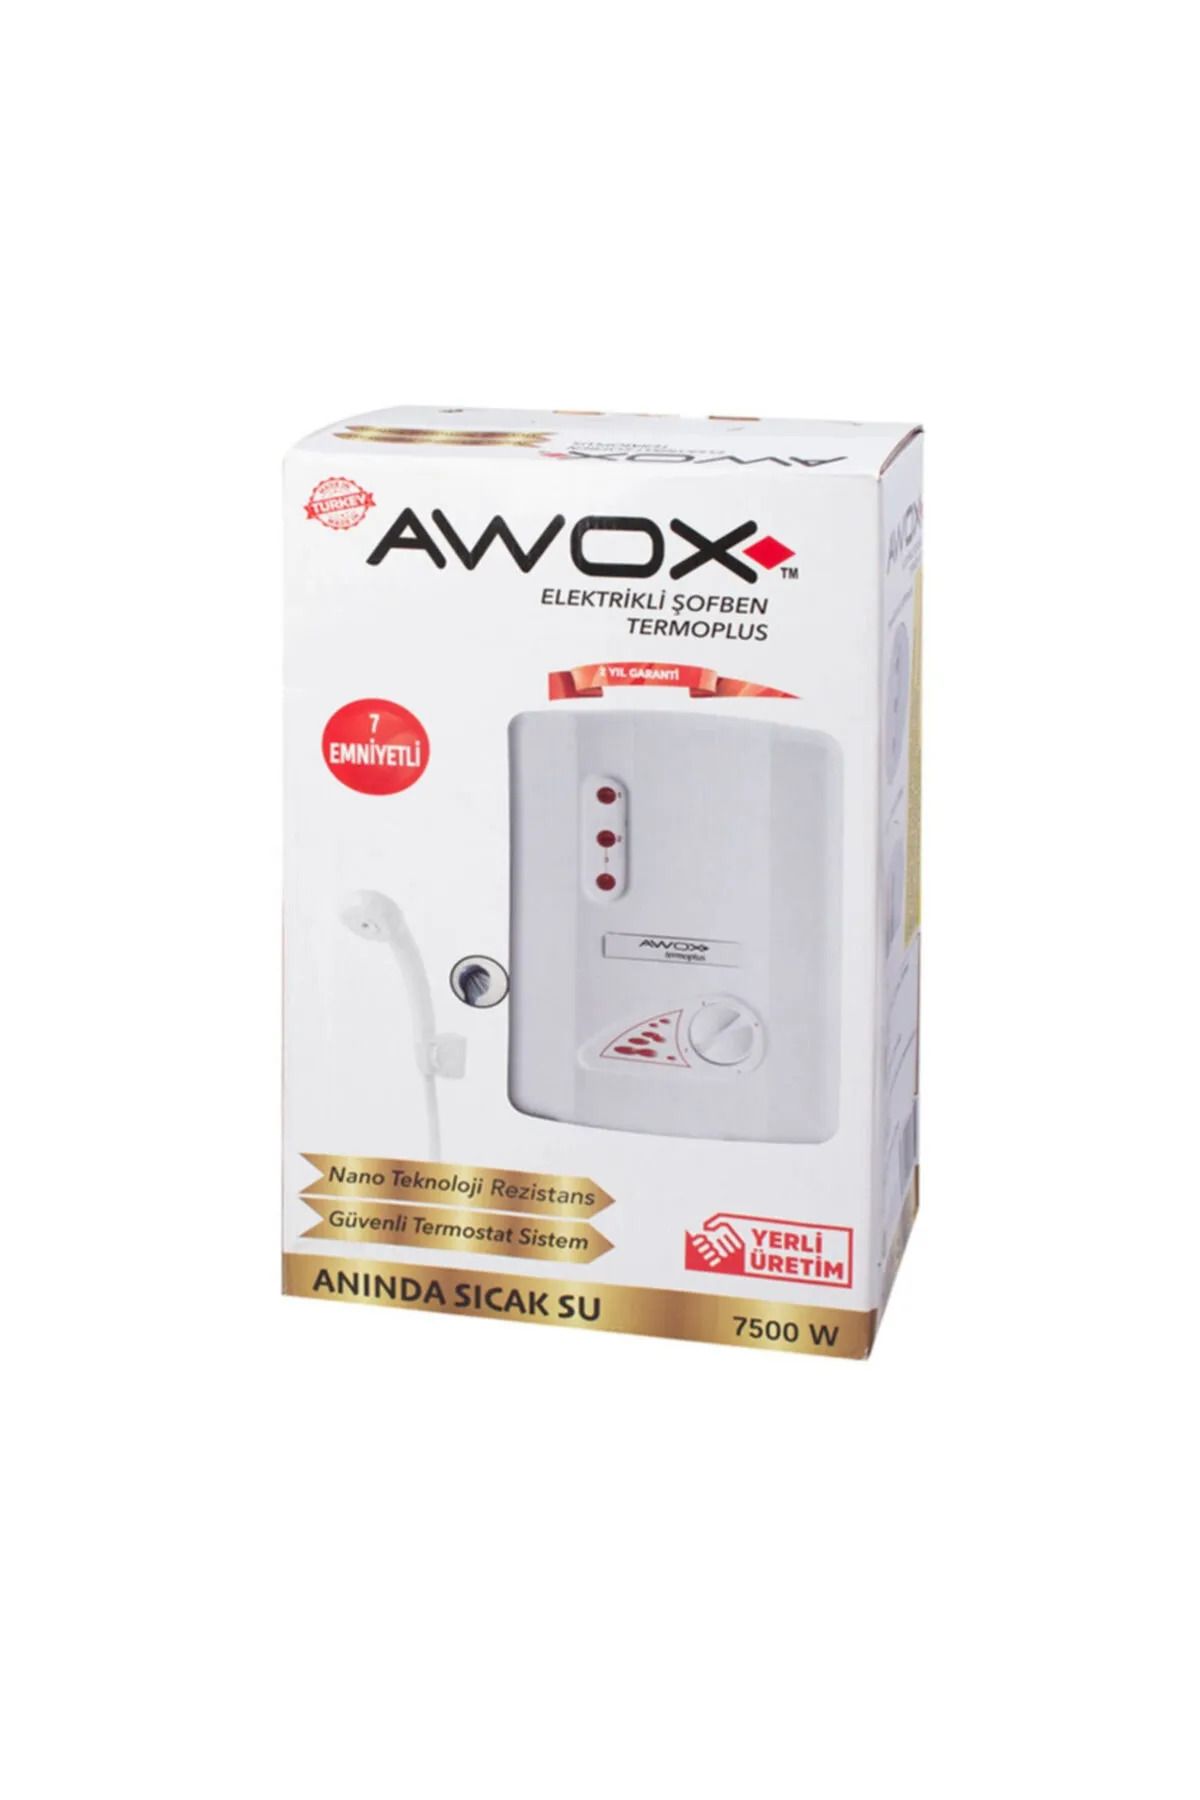 AWOX Termoplus 7 Emniyetli Ani Su Isıtıcı Elektrikli Şofben 7500w